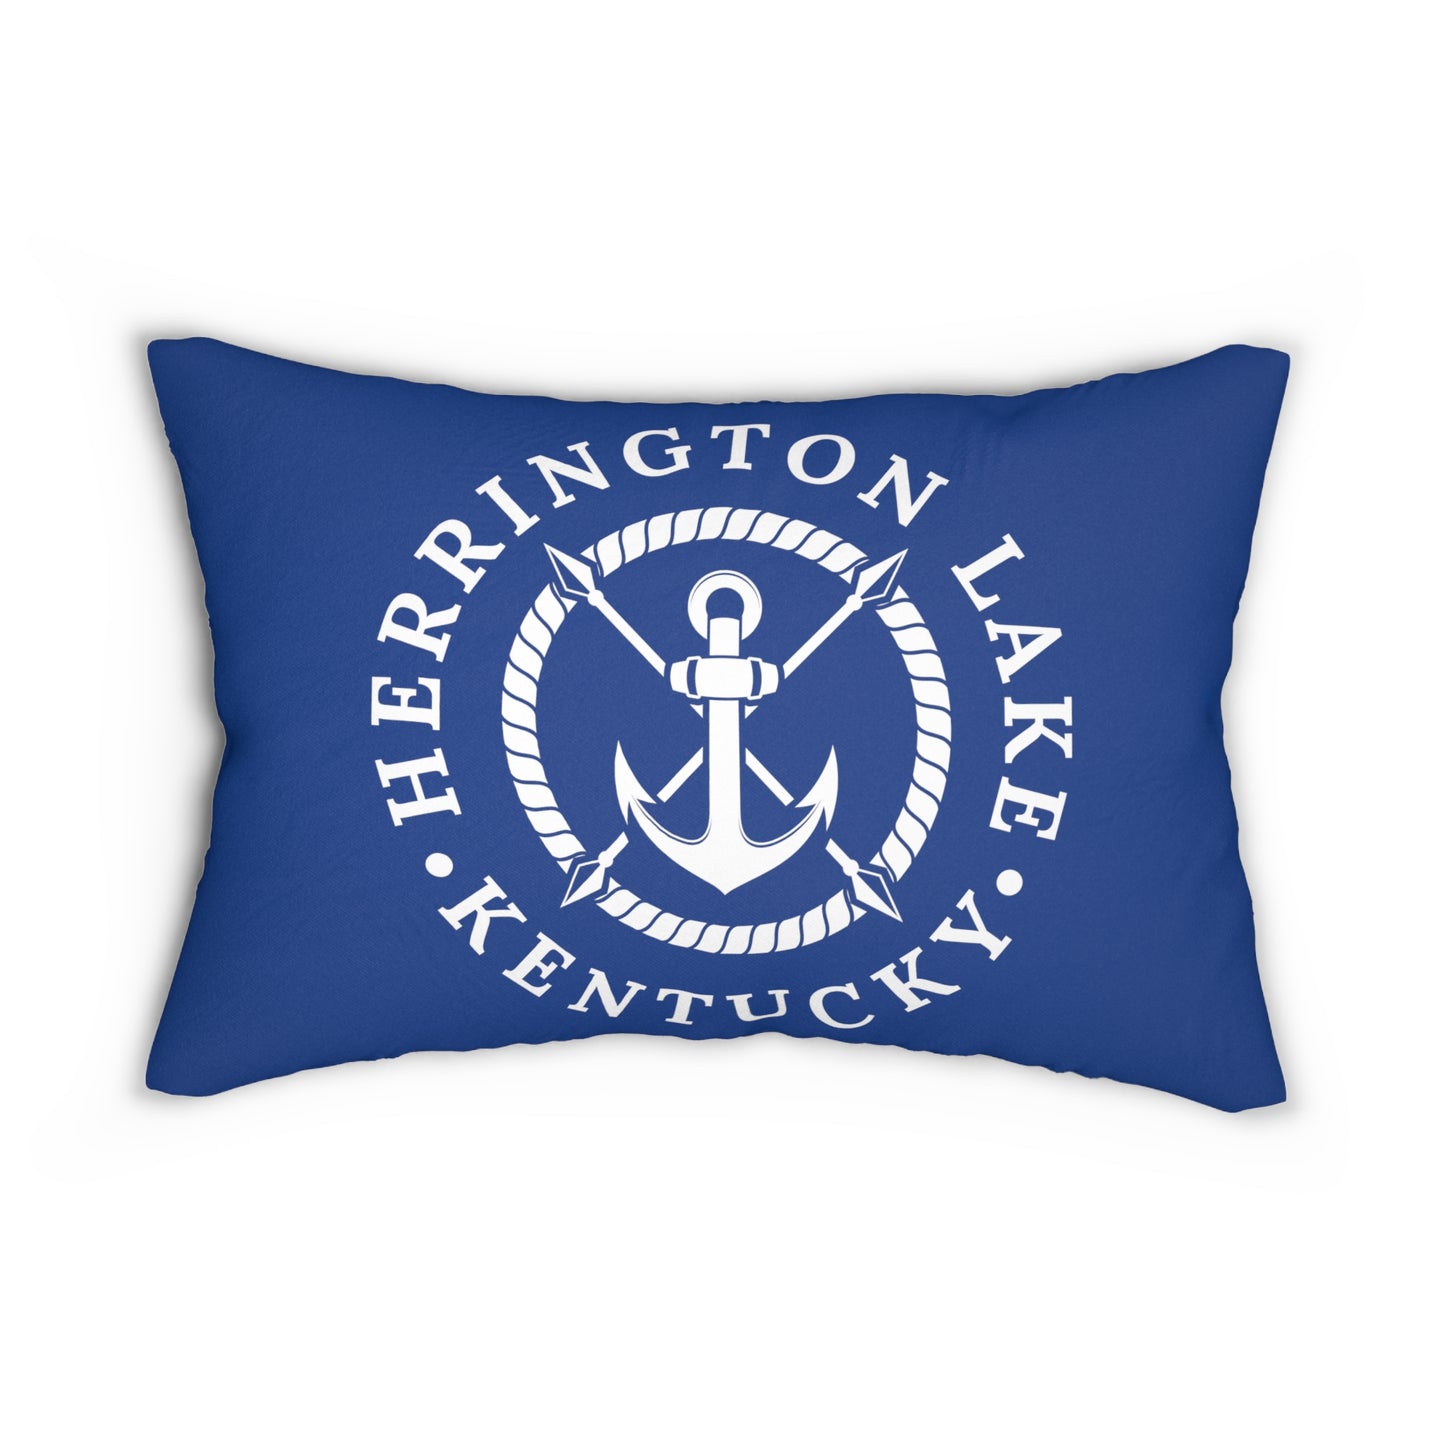 Herrington Lake Anchor Lumbar Pillow (Blue)